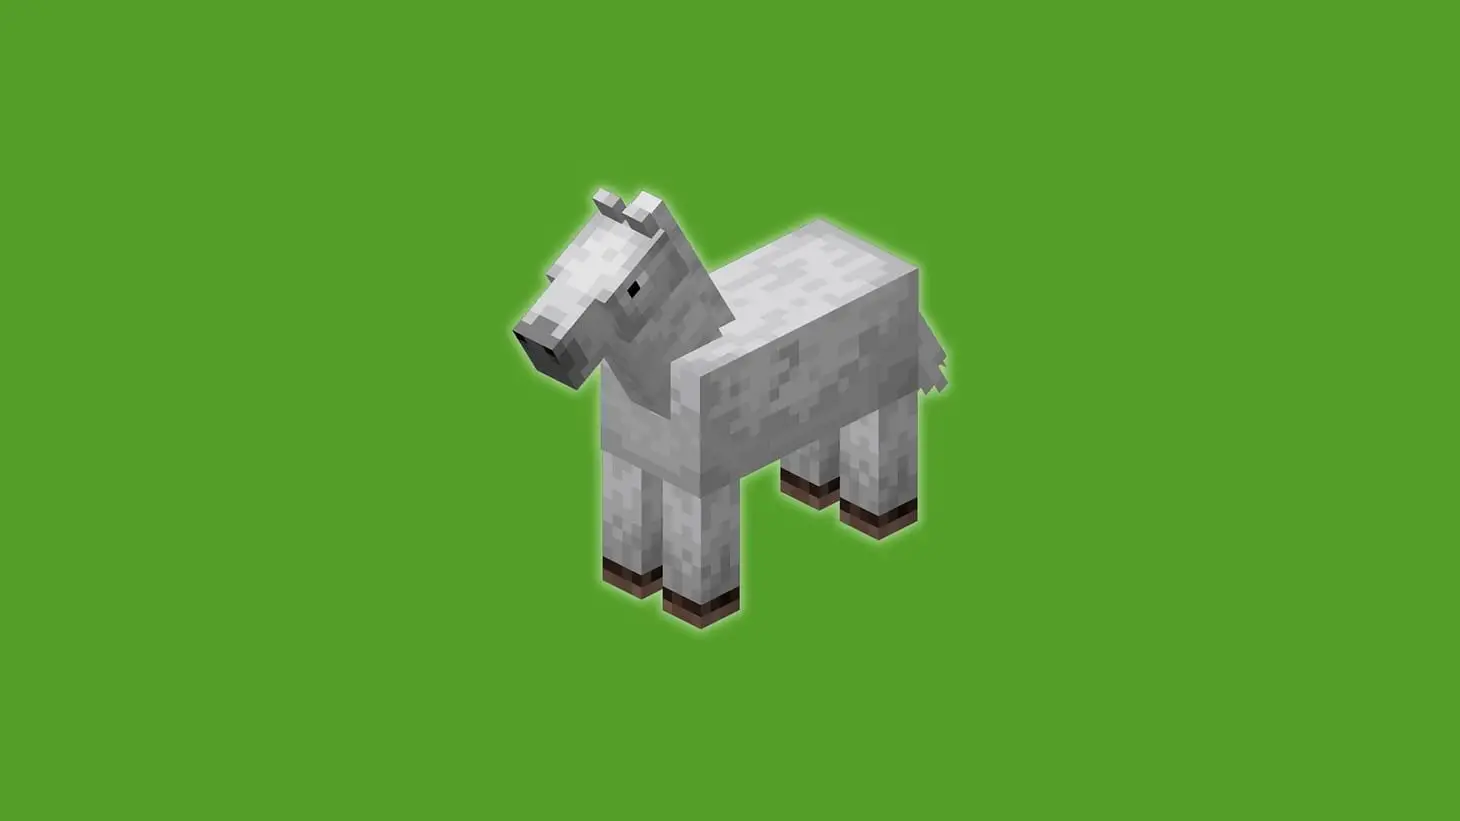 Không biết đặt tên thú cưng trong Minecraft sao cho hay? Đây là 50 tên thú cưng hay nhất dành cho bạn